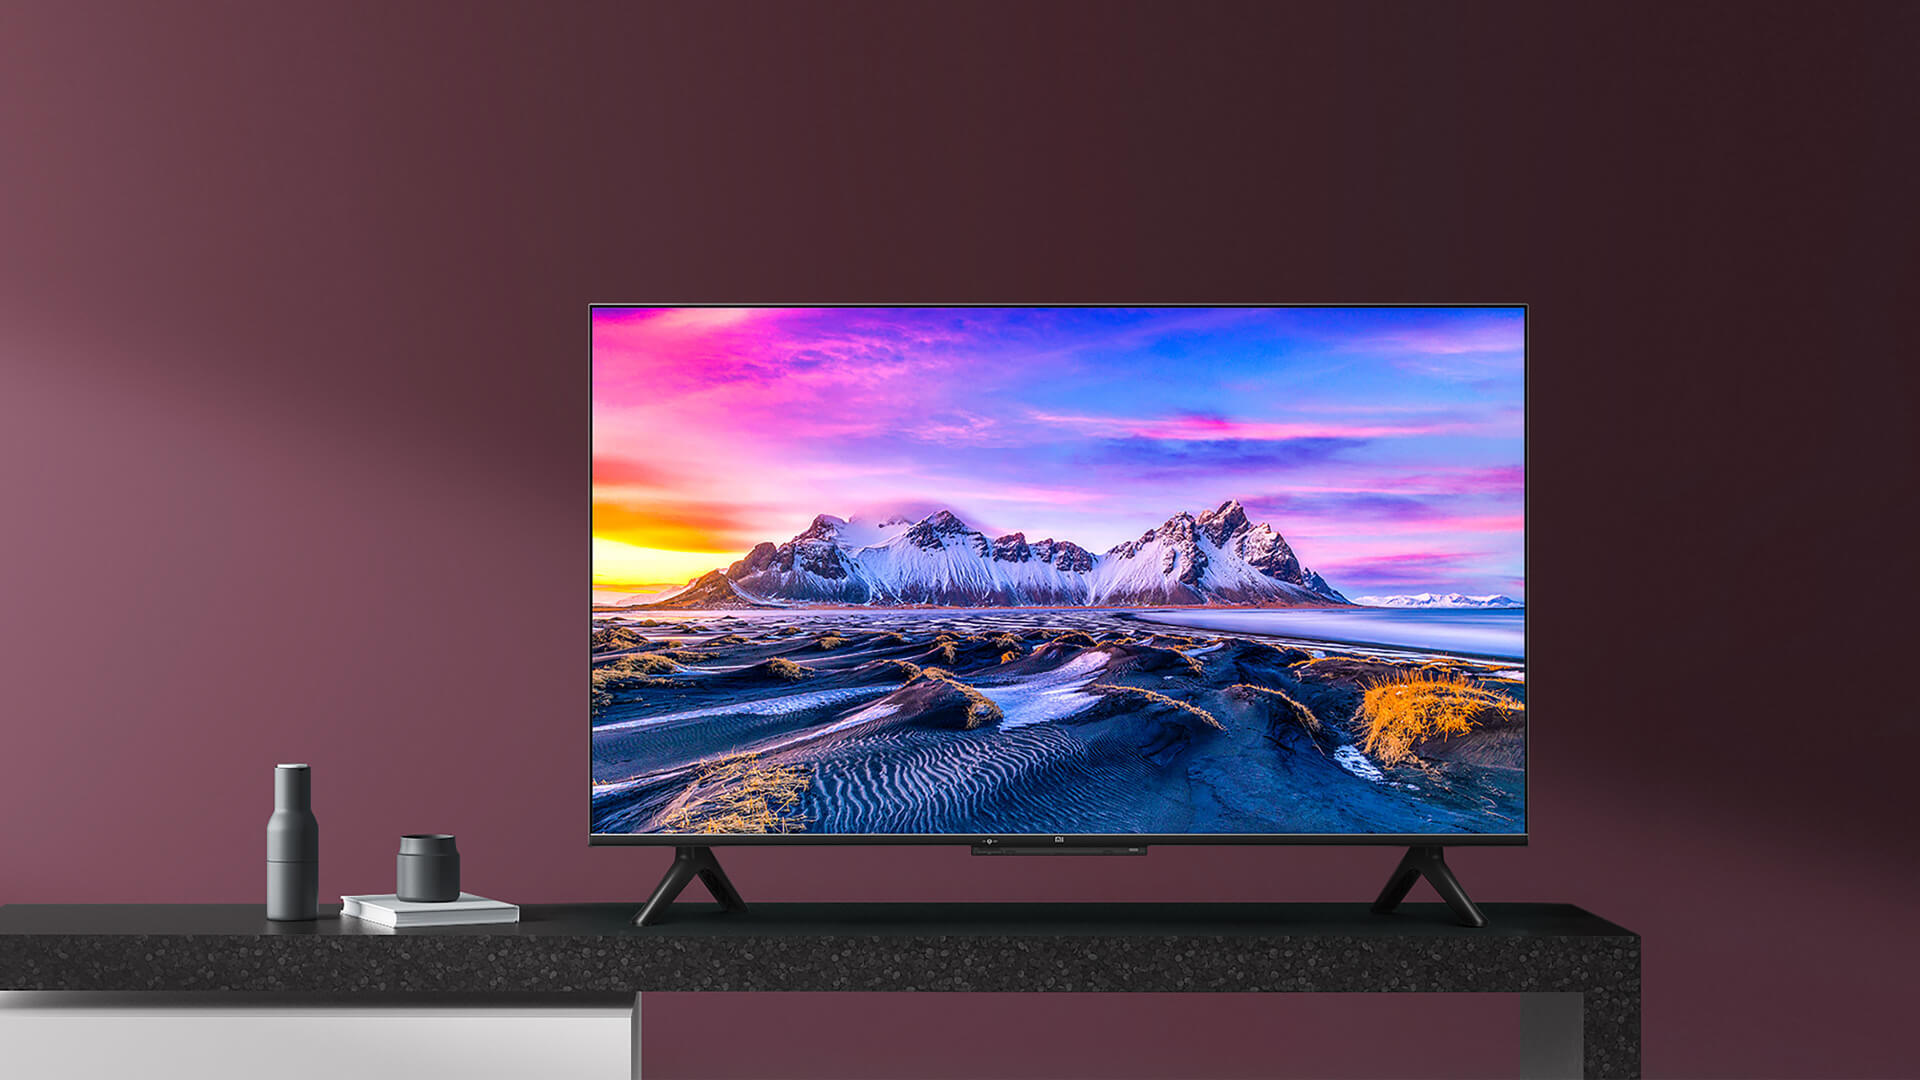 Xiaomi снизила цену на гигантский 70-дюймовый телевизор до чуть более 300 долларов в Китае